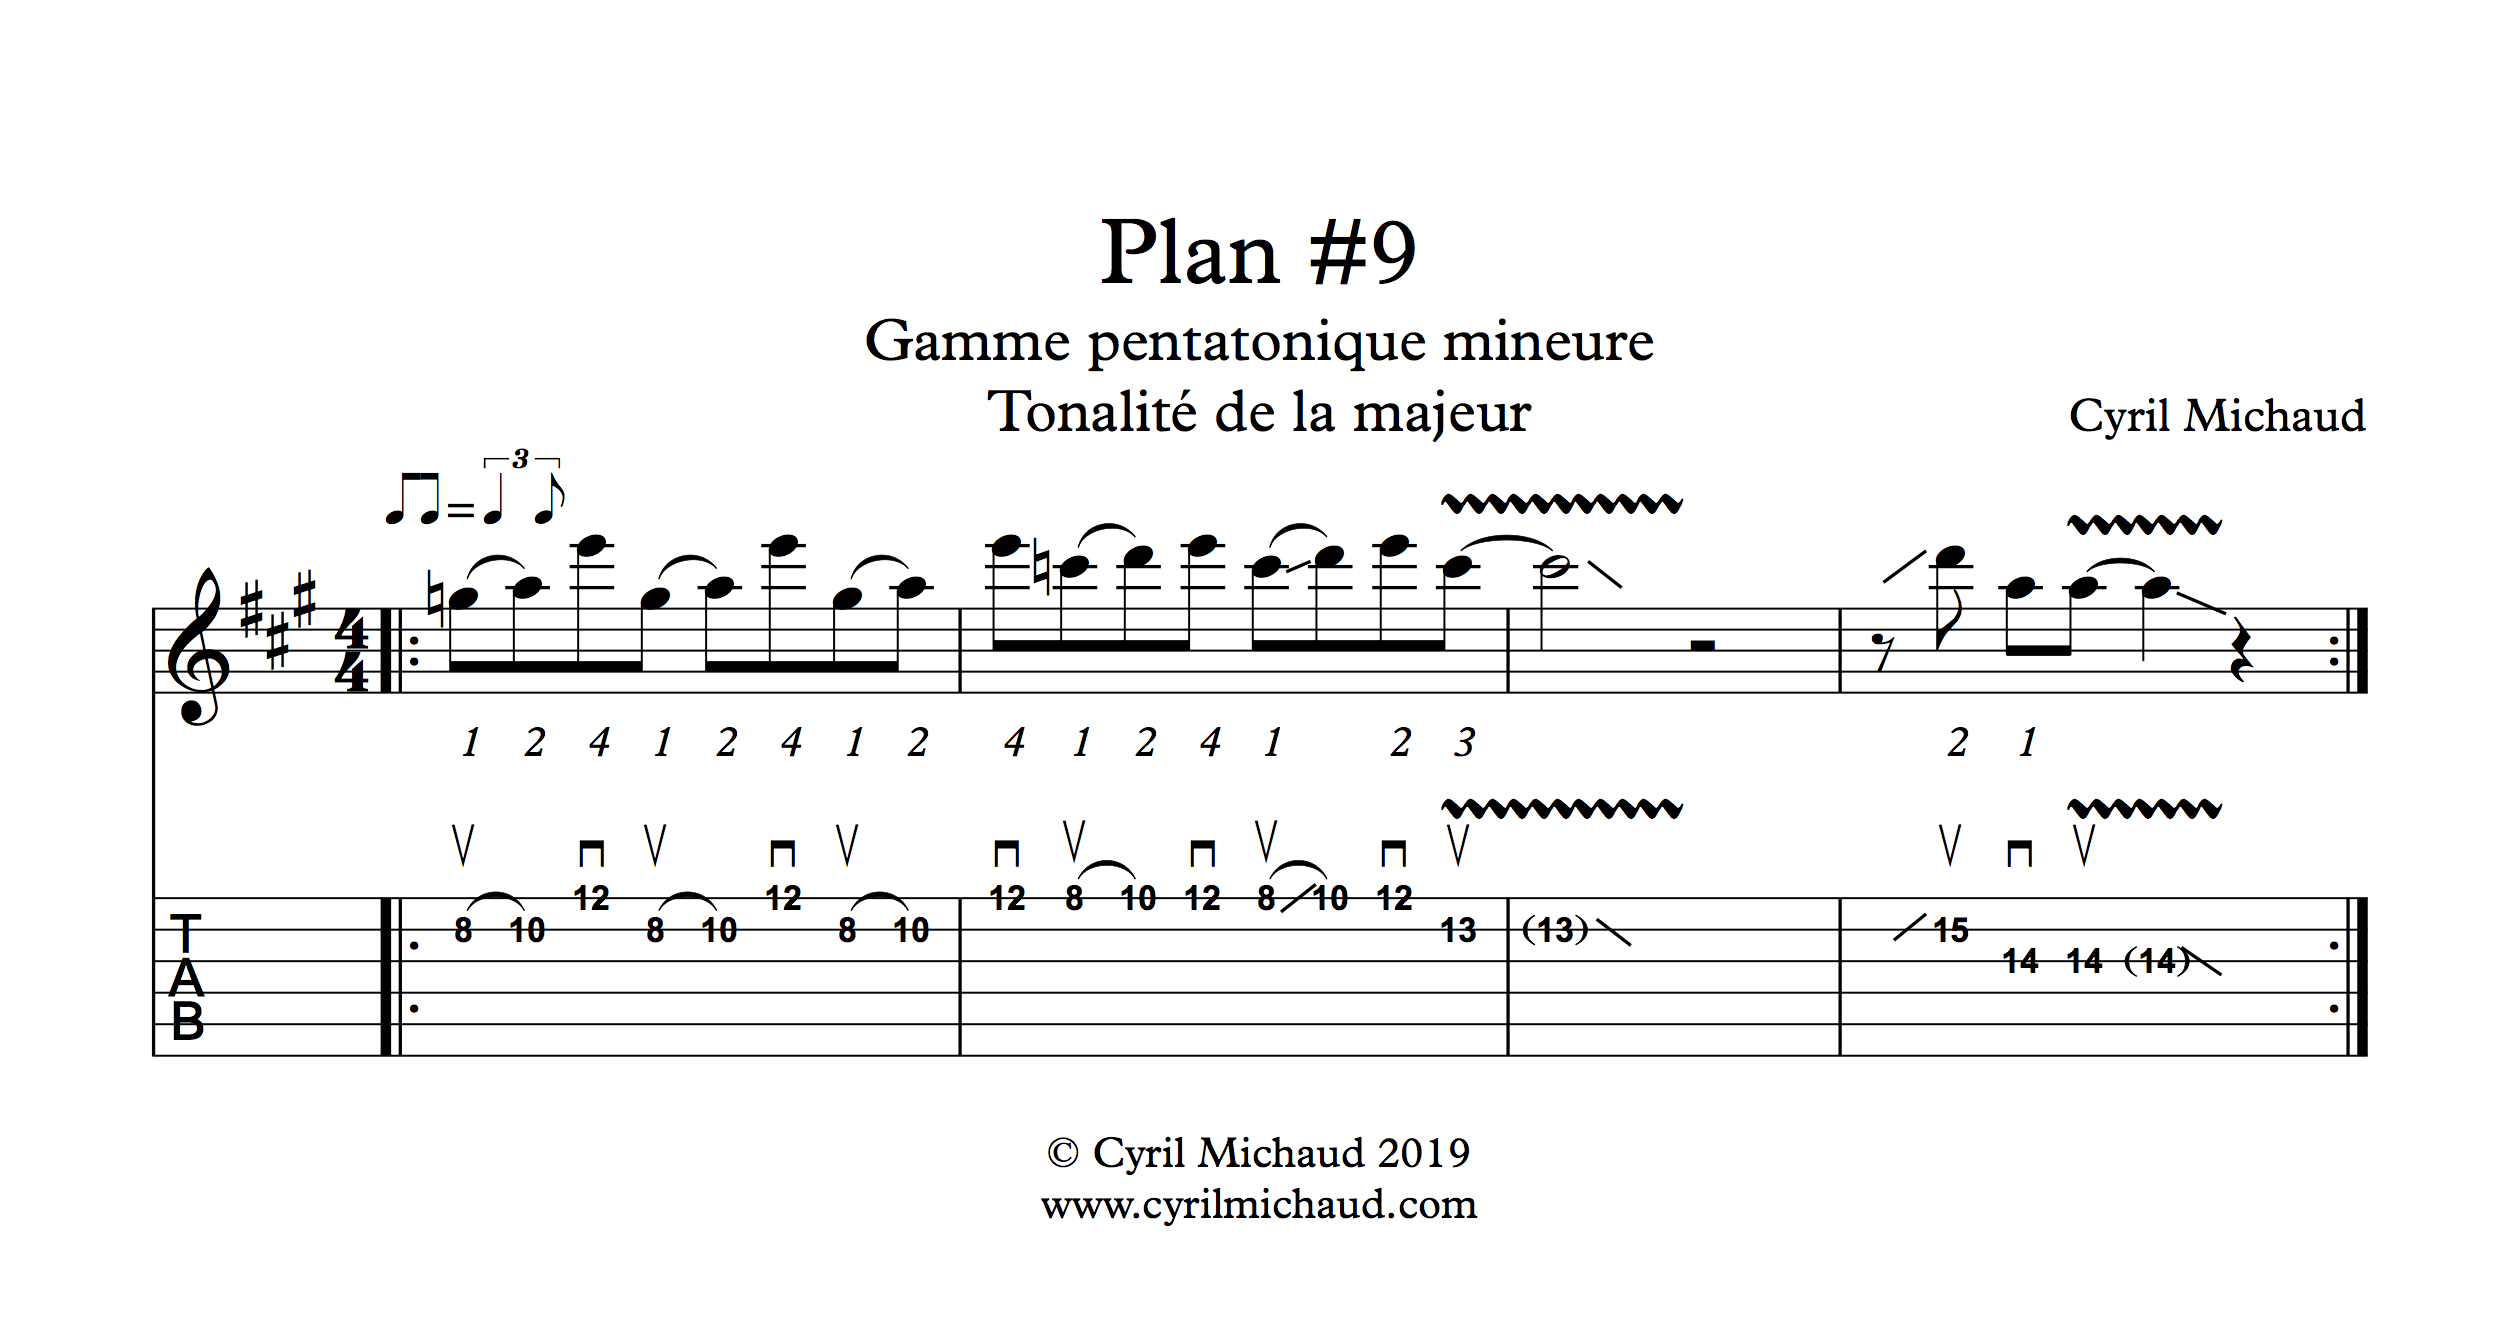 Plan blues sur la gamme pentatonique mineure (9)